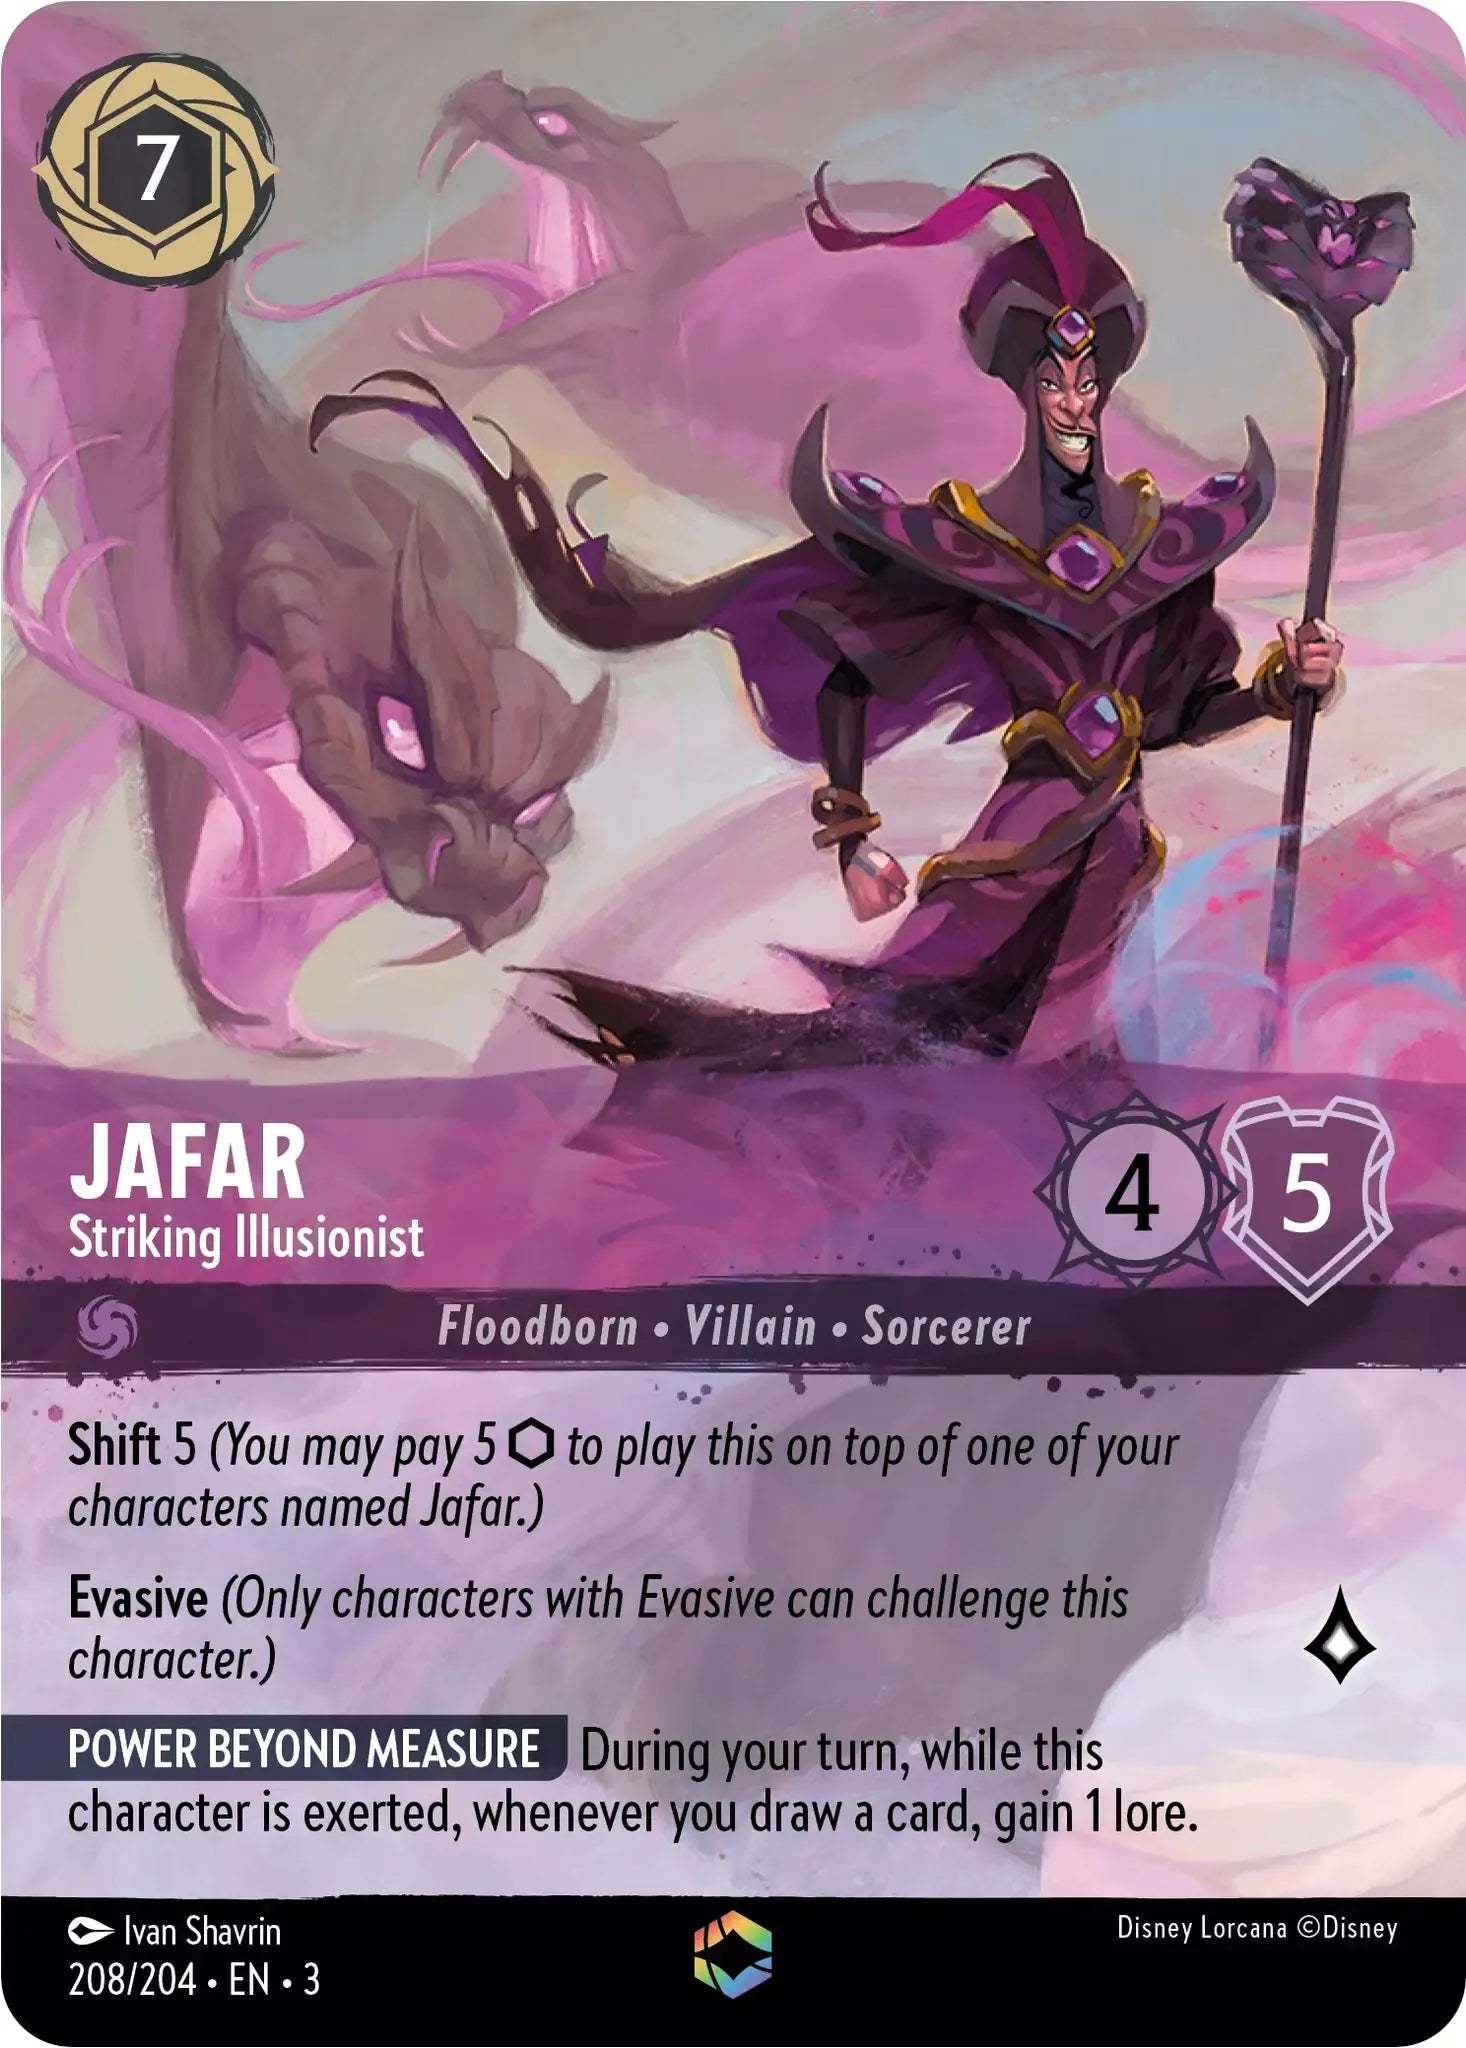 Jafar - Striking Illusionist (Alternate Art)